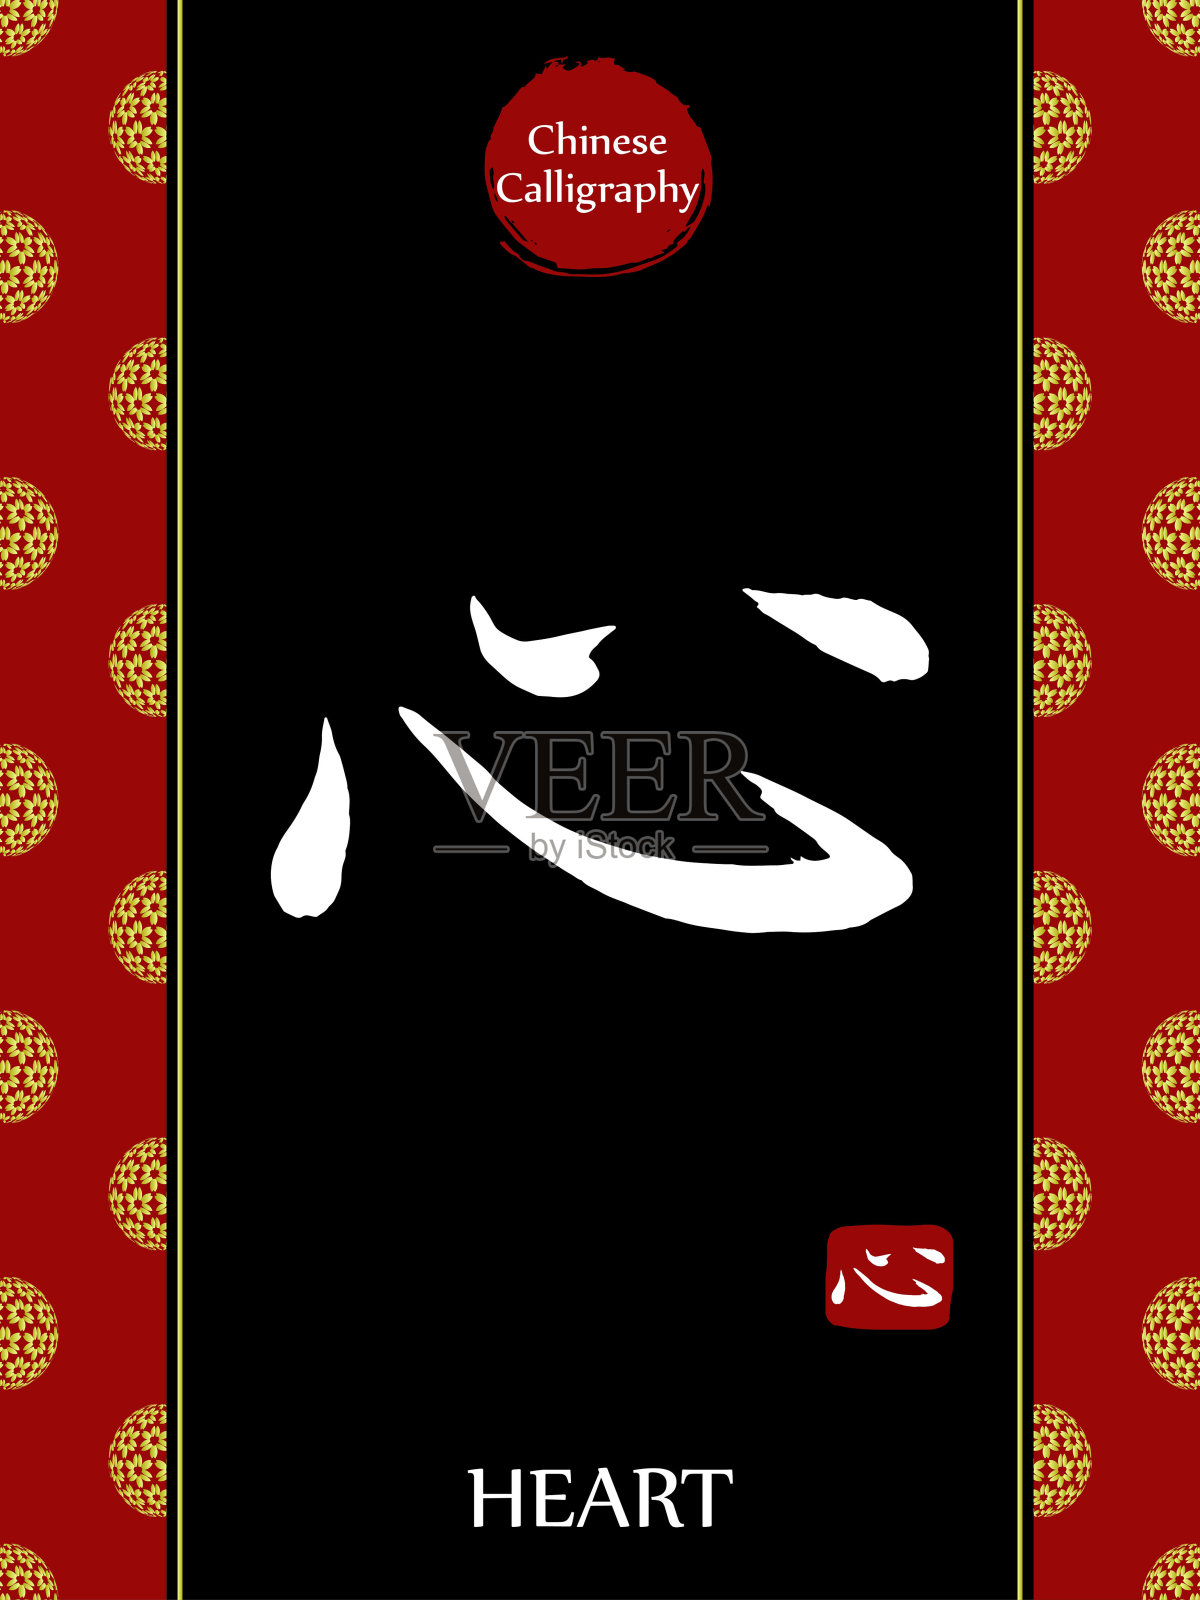 中国书法象形文字的翻译:心。亚洲金花球农历新年图案。向量中国符号在黑色背景。手绘图画文字。毛笔书法插画图片素材